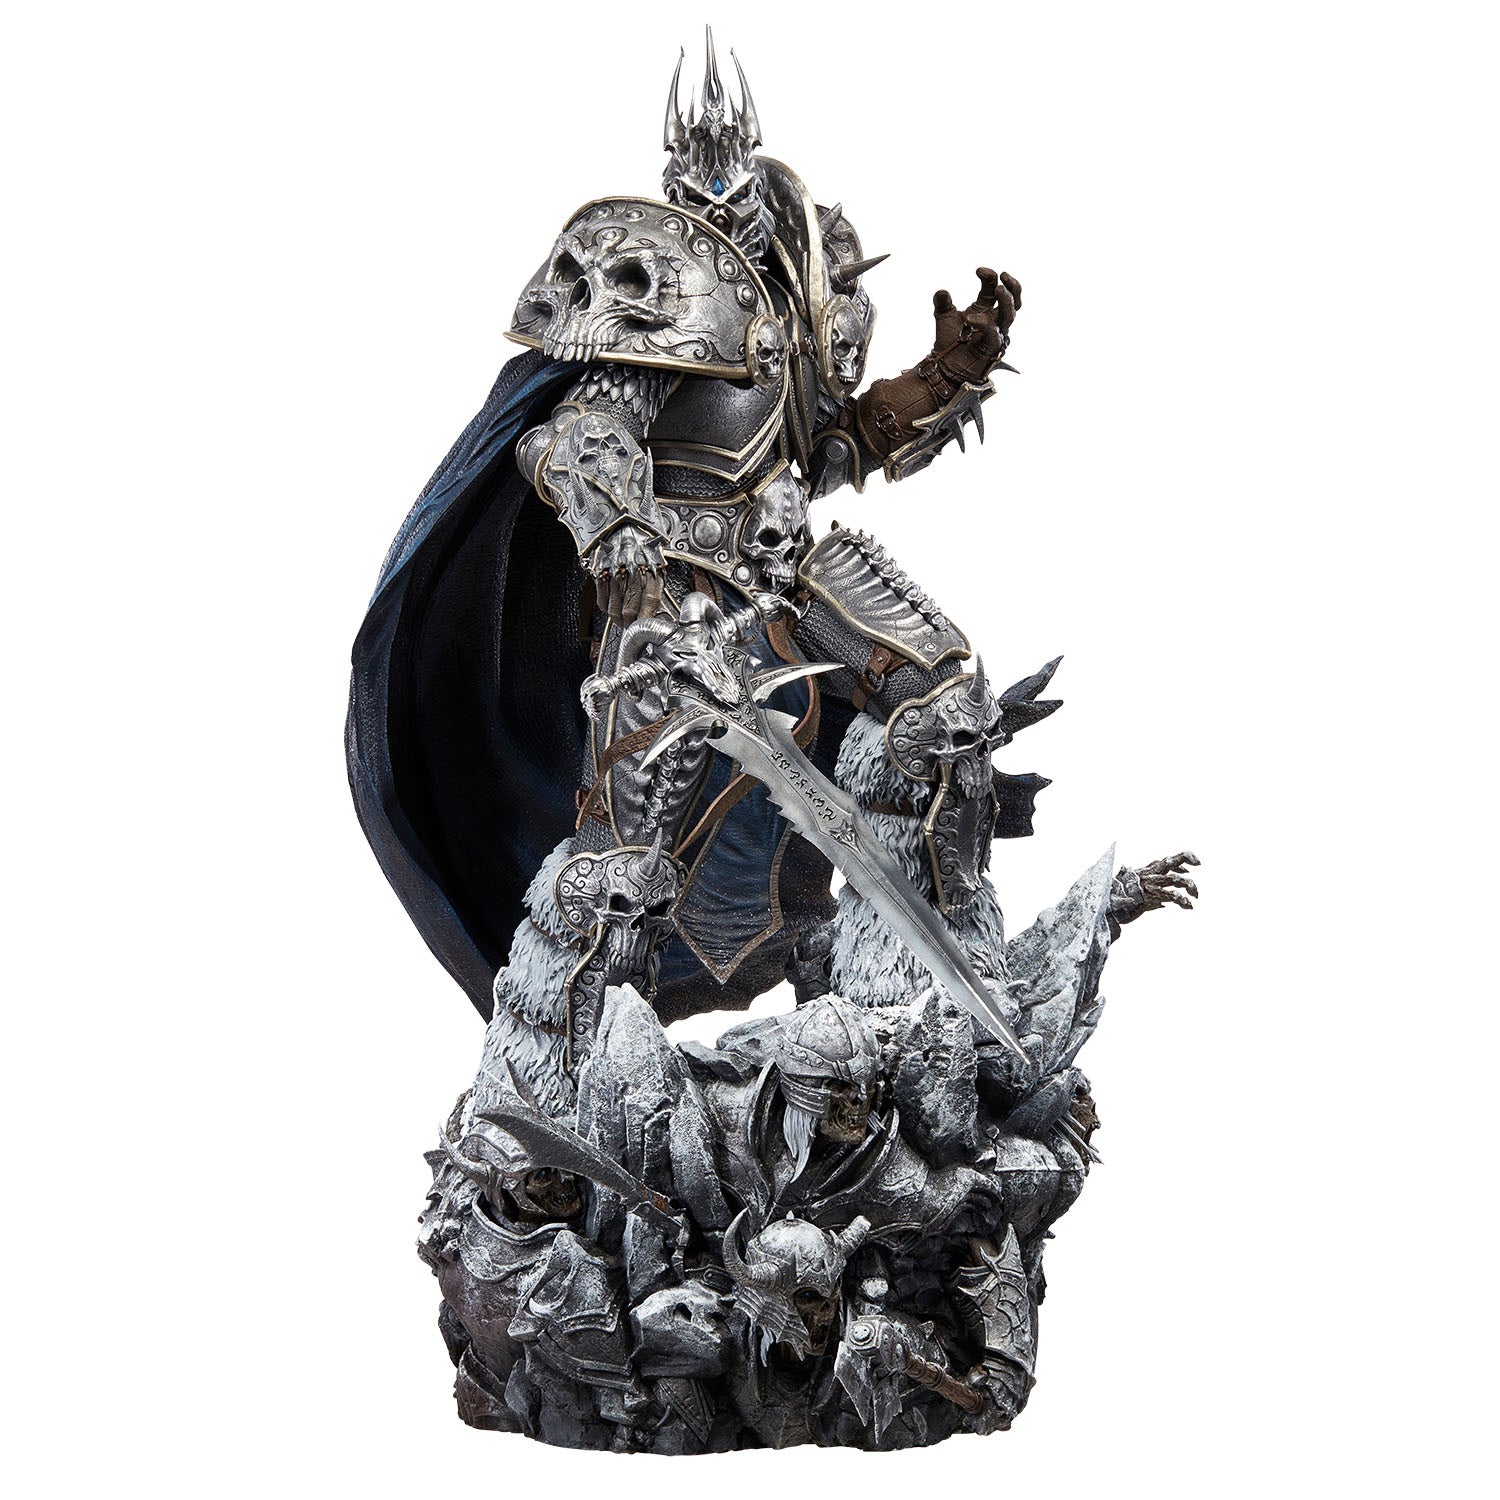 World of Warcraft Lich King Arthas 66cm Premium Statue - Front View